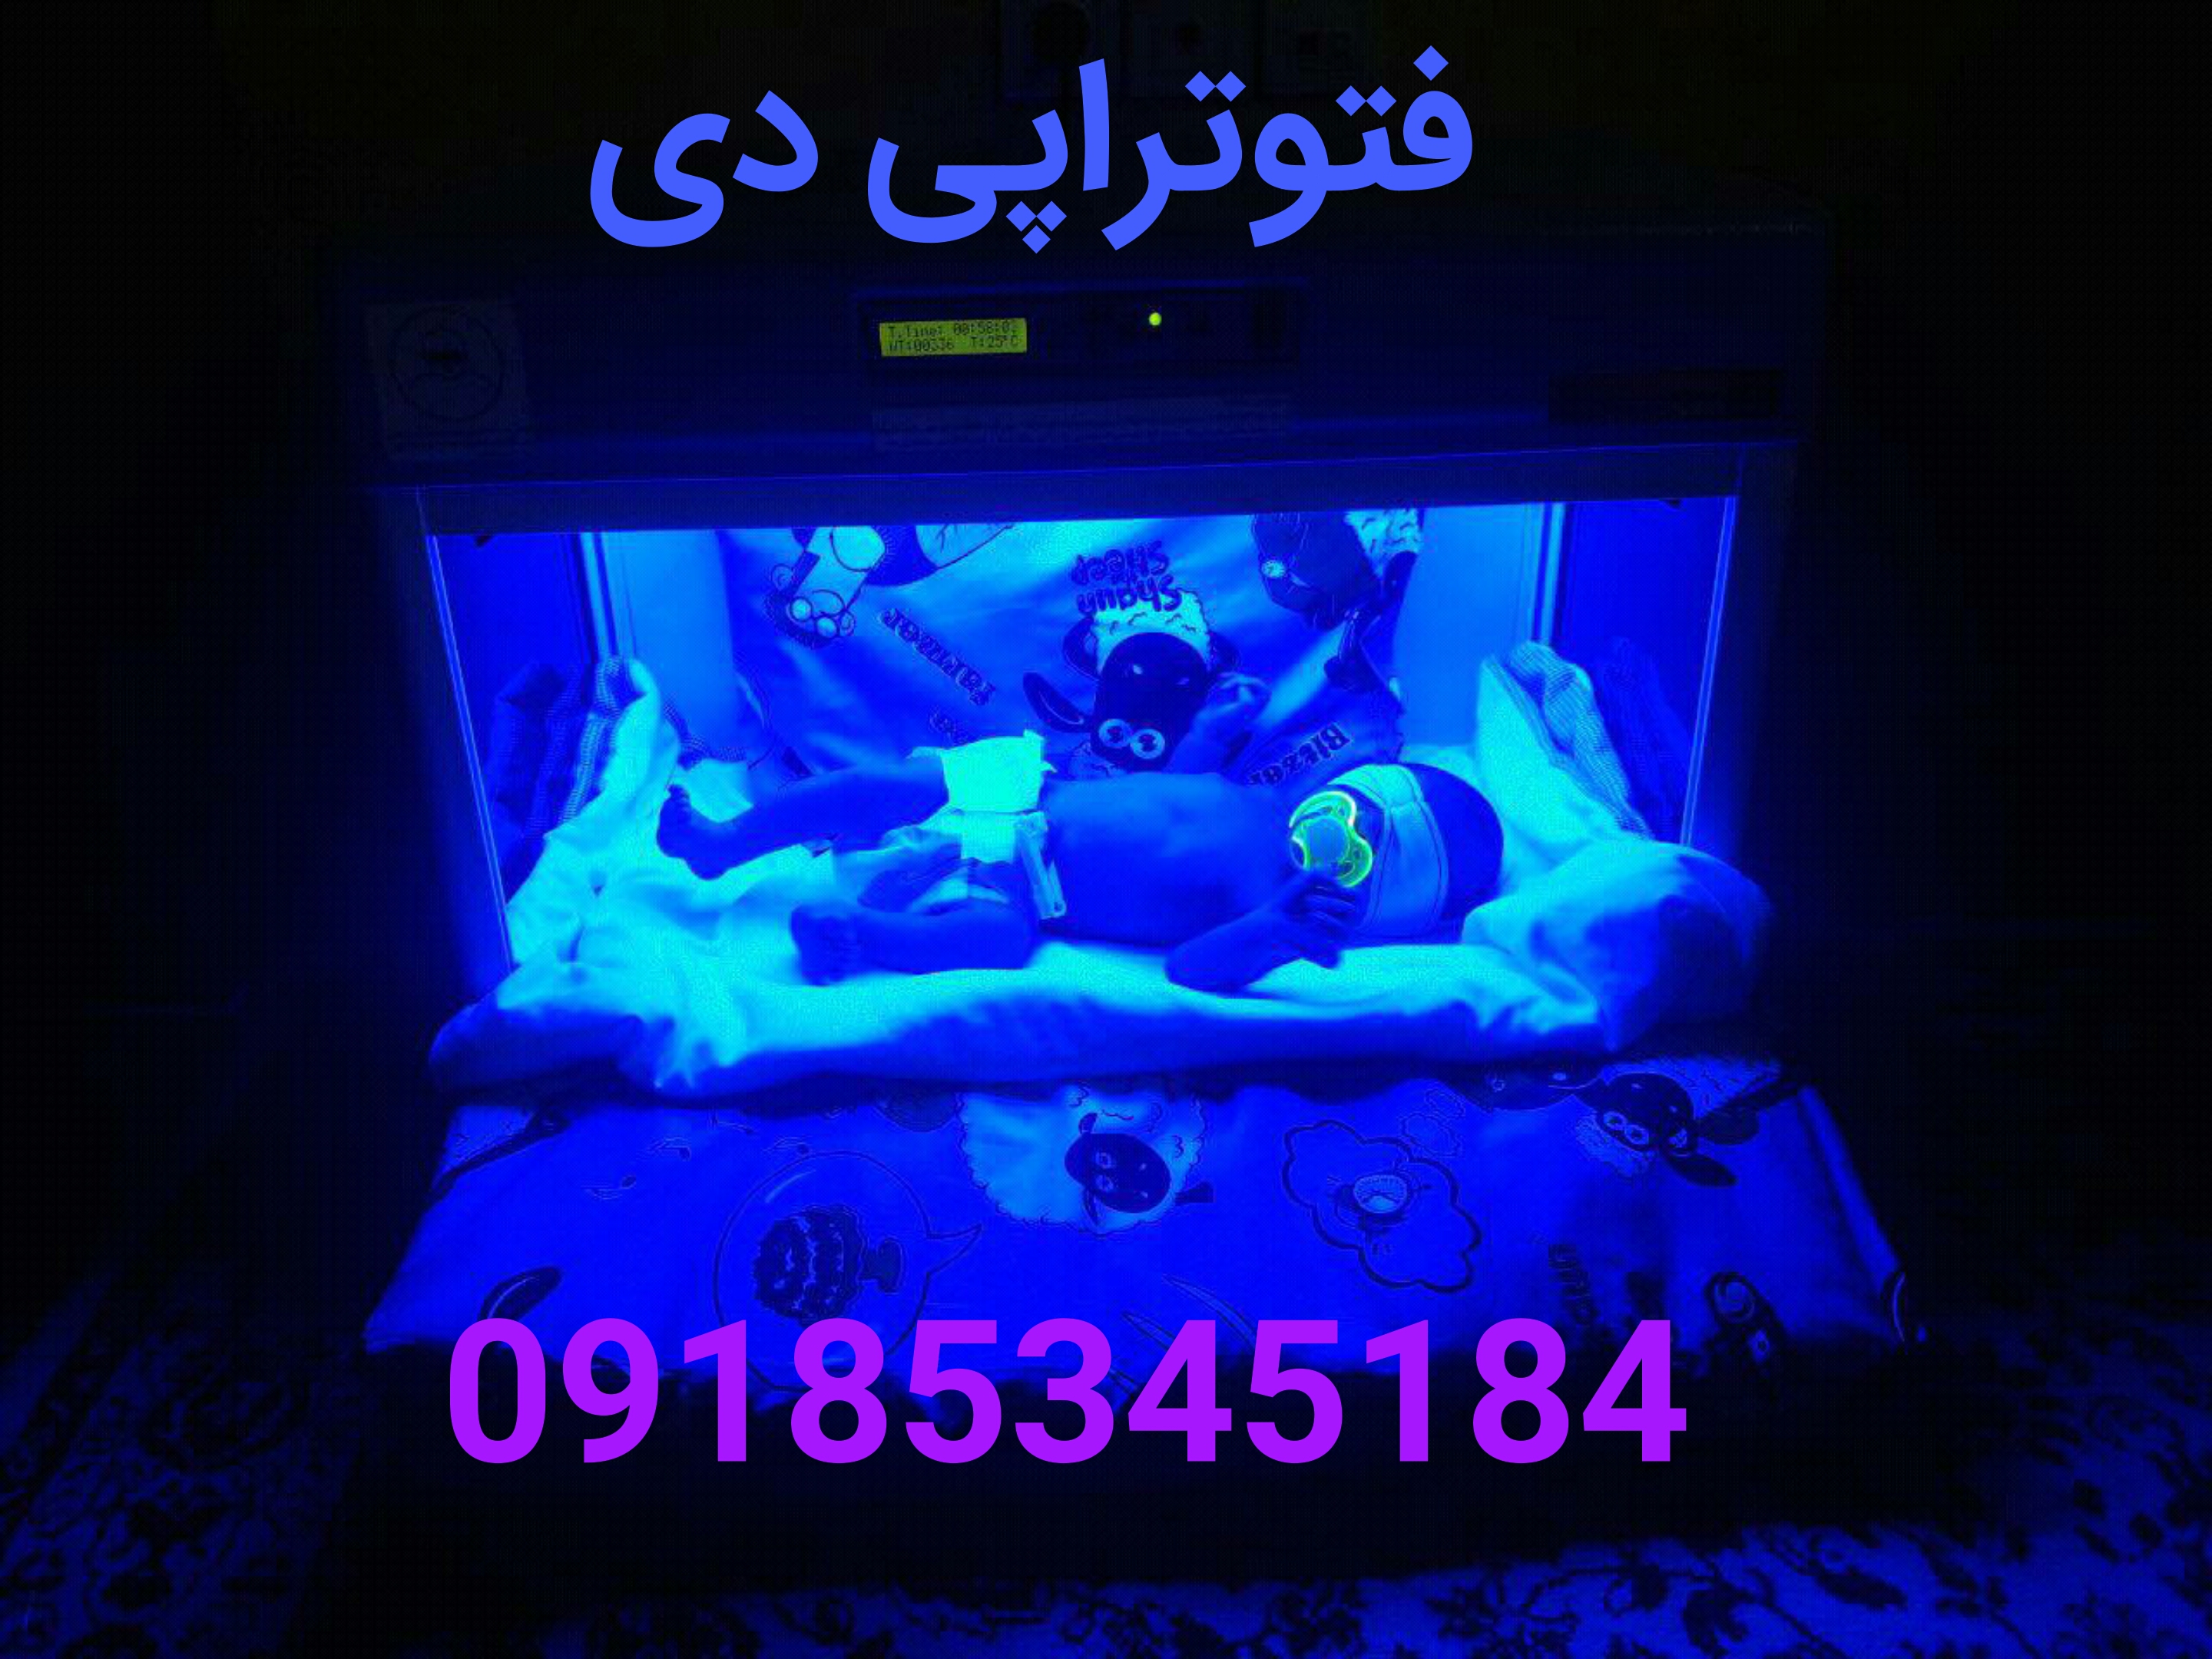 اجاره دستگاه زردی نوزادان در کرمانشاه  09185345184  فتوتراپی دی